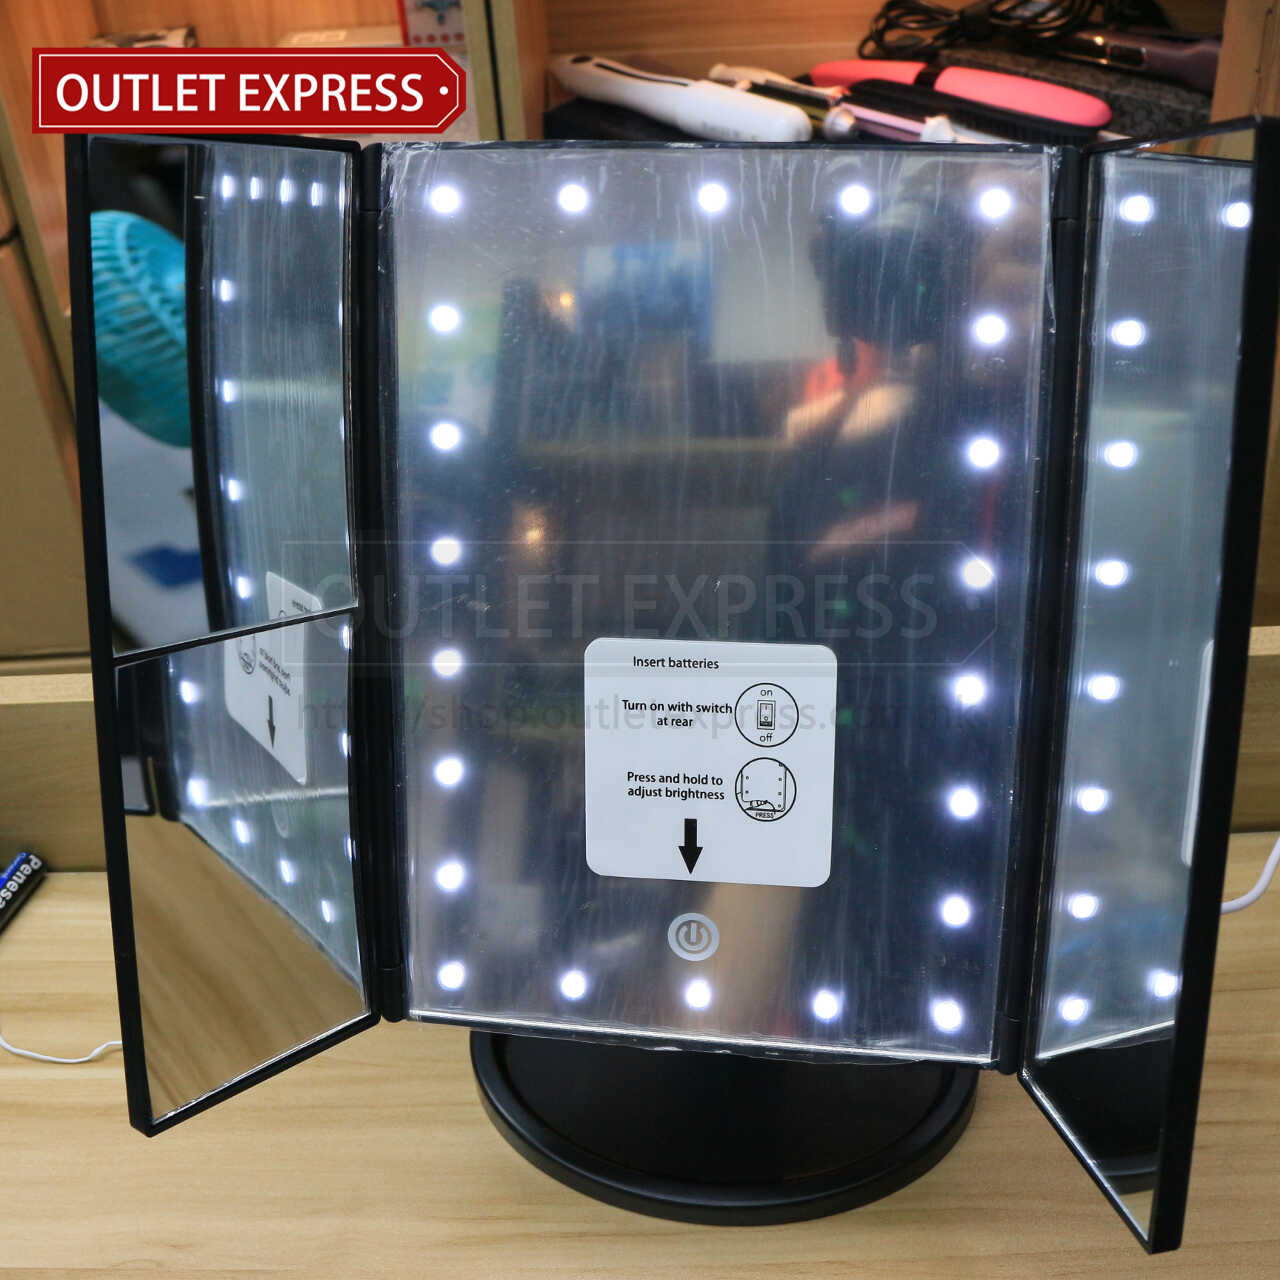 三面折疊觸摸感應LED化妝鏡 - Outlet Express HK生活百貨城實拍相片